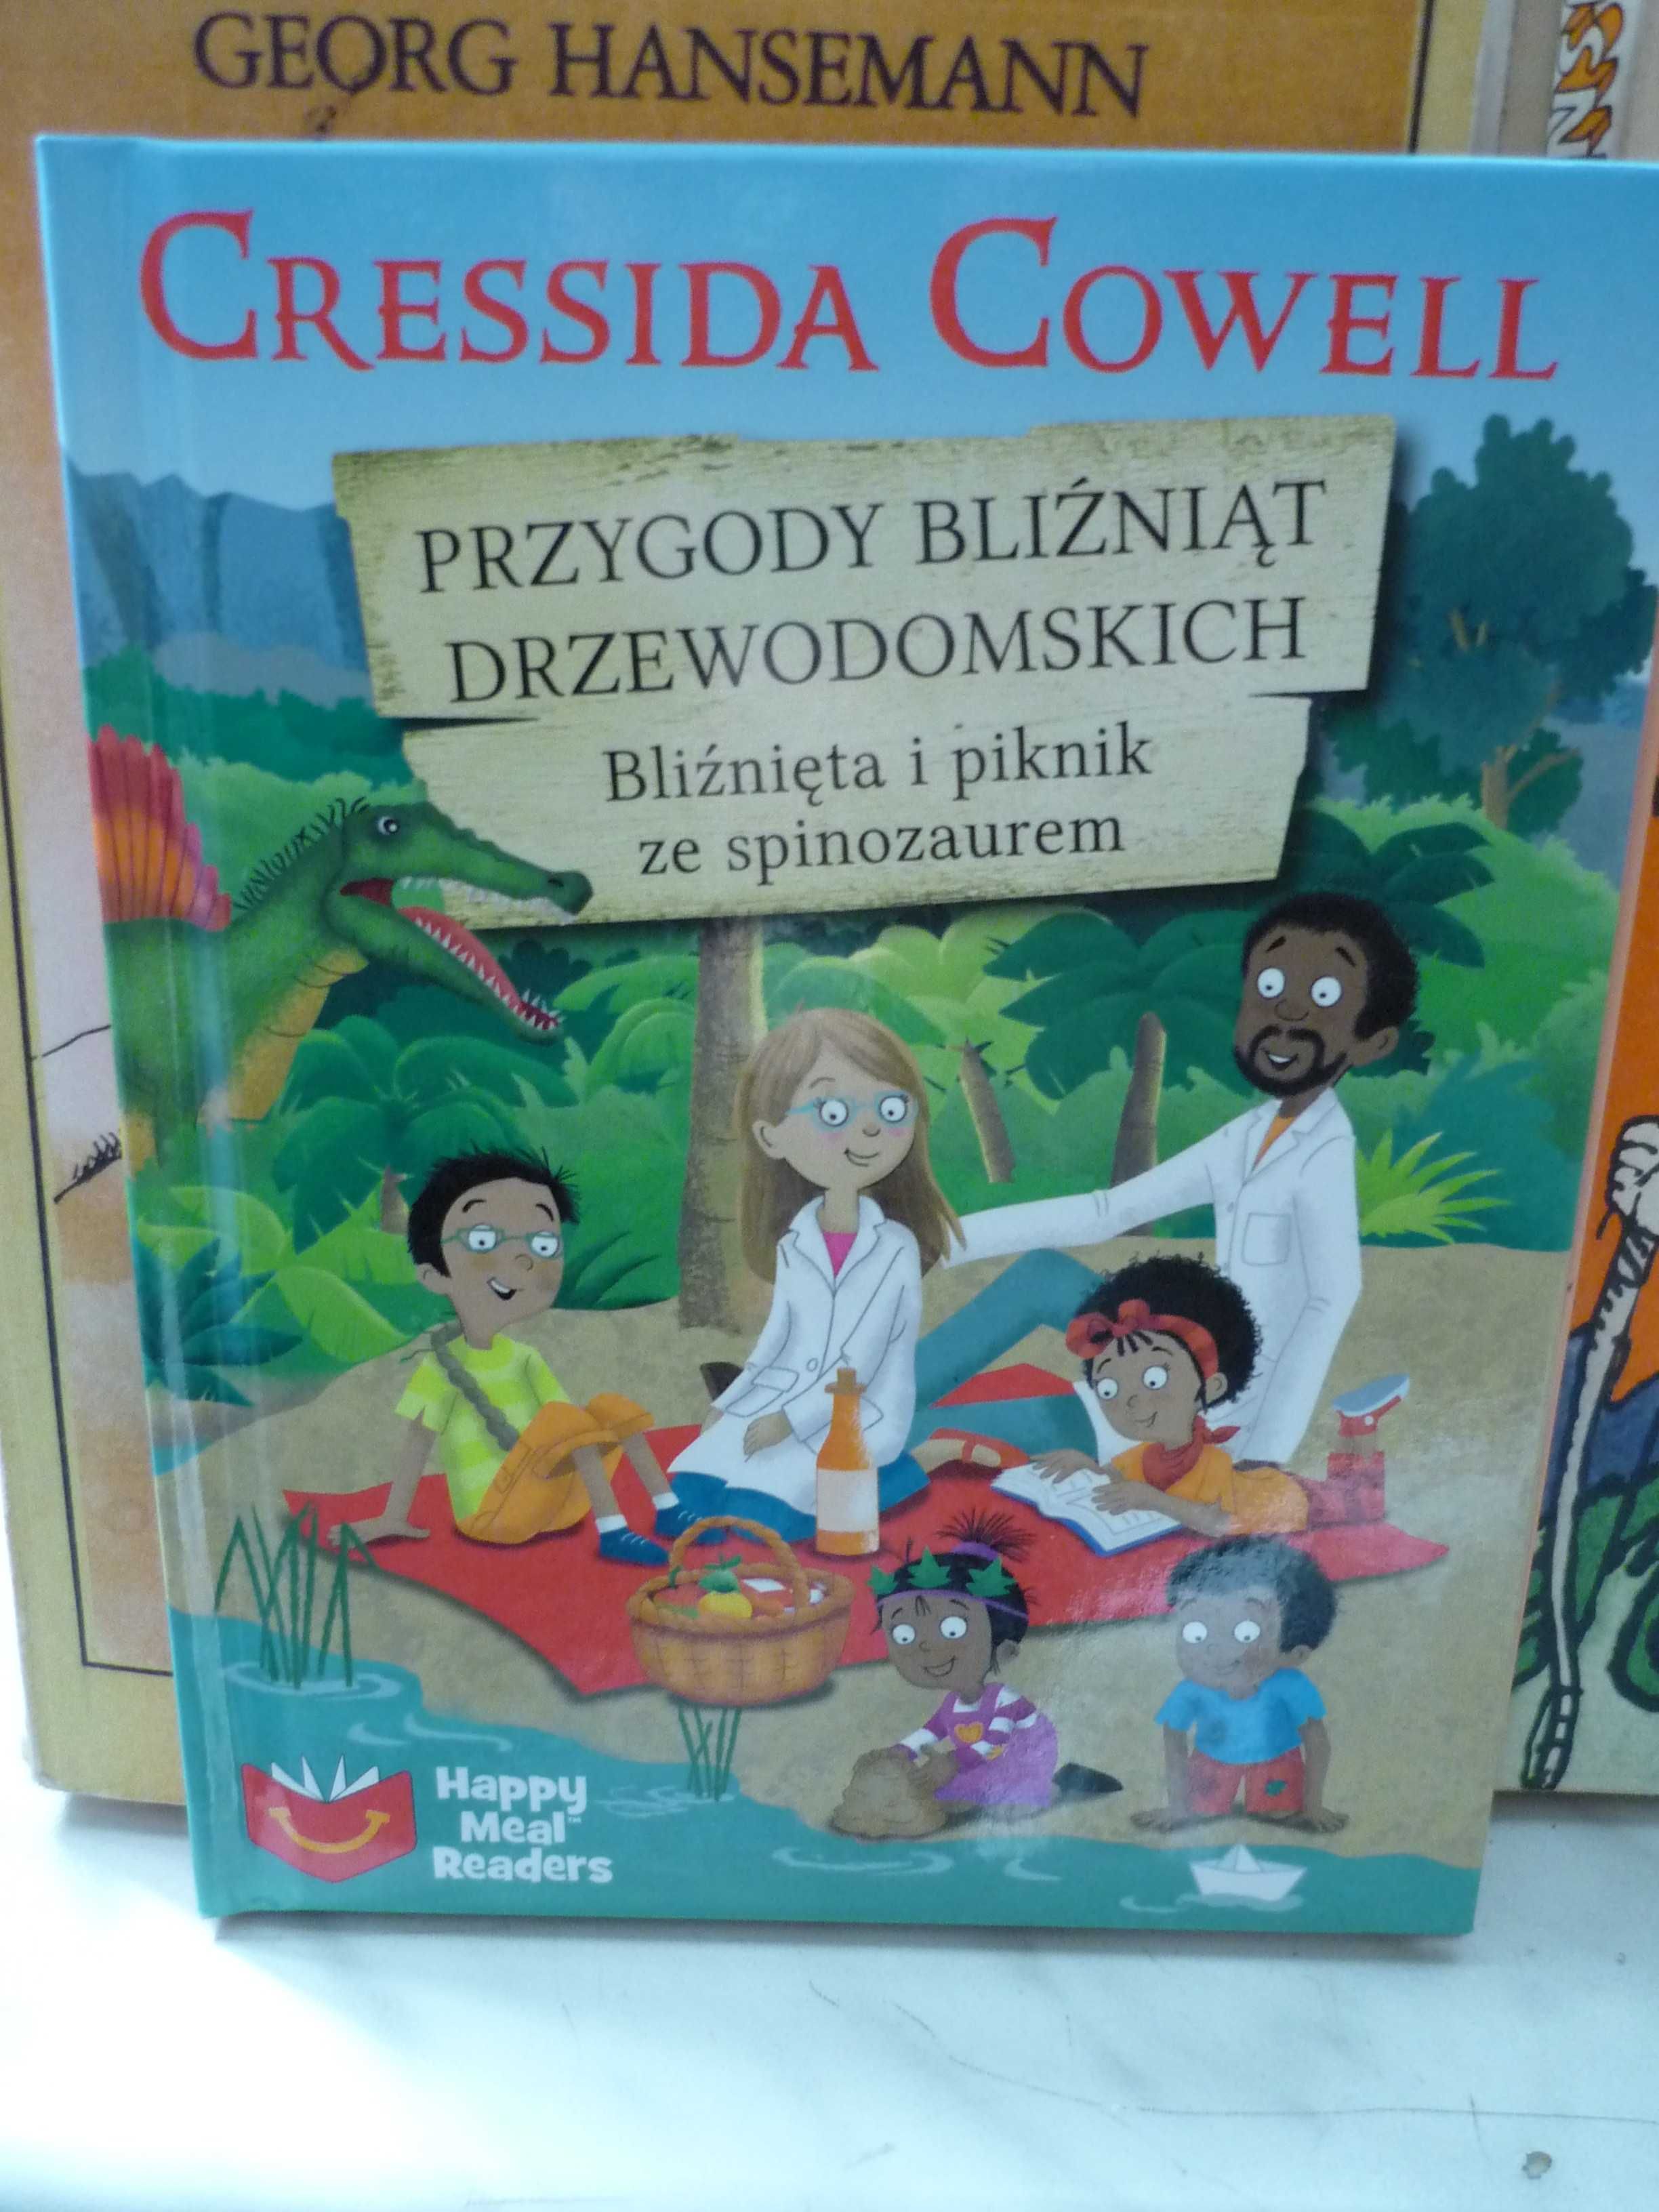 Przygody bliźniąt Drzewodomskich , Cressida Cowell.